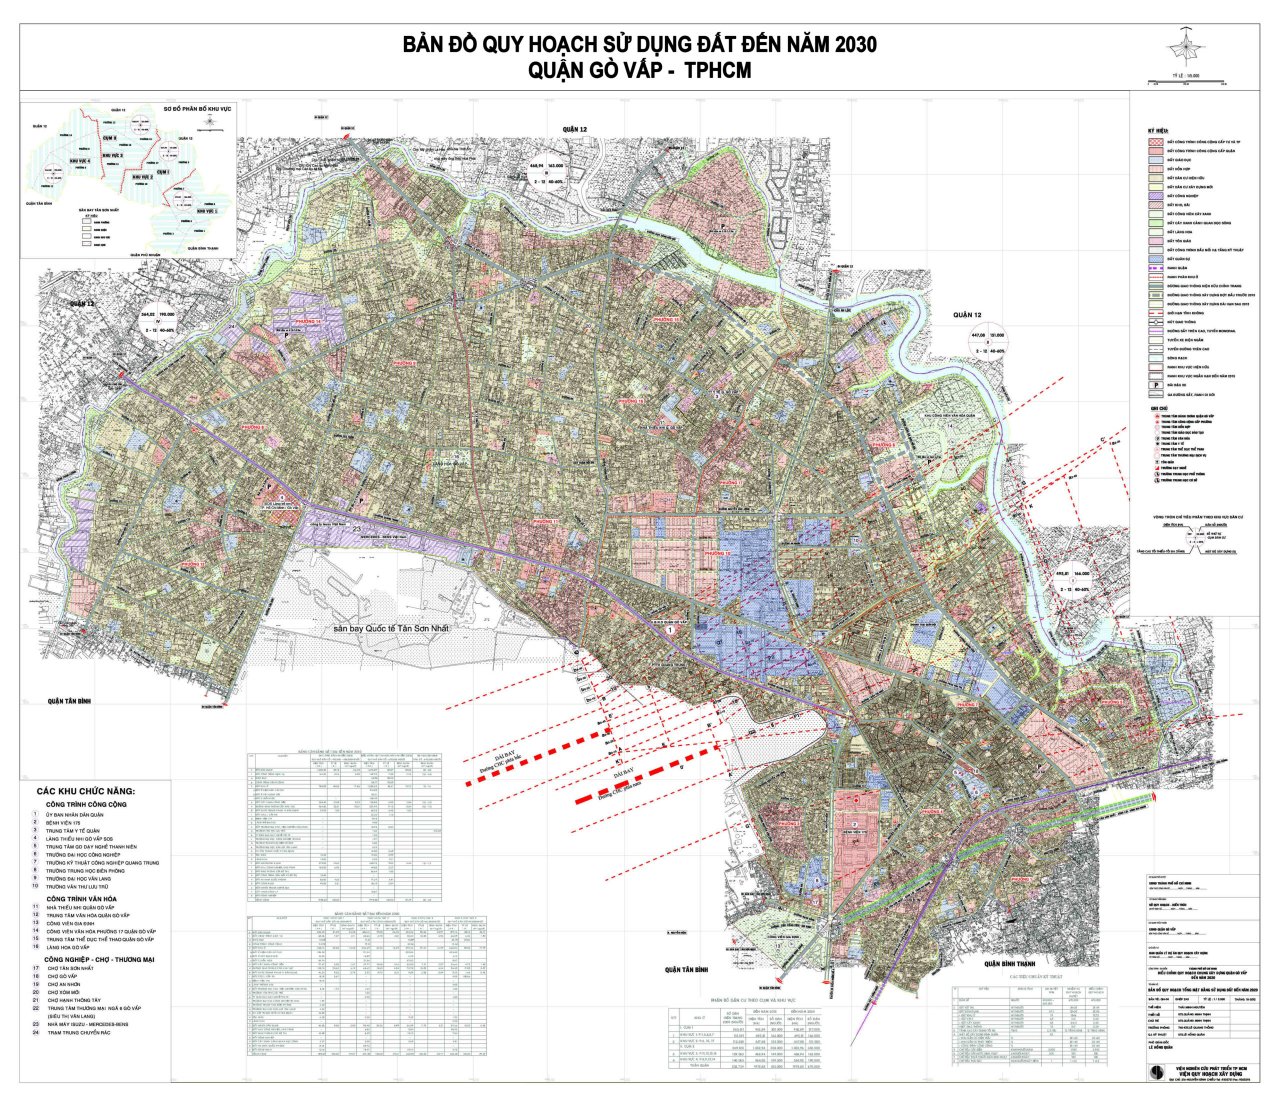 Bản đồ quy hoạch sử dụng đất tại Quận Gò Vấp đến năm 2030